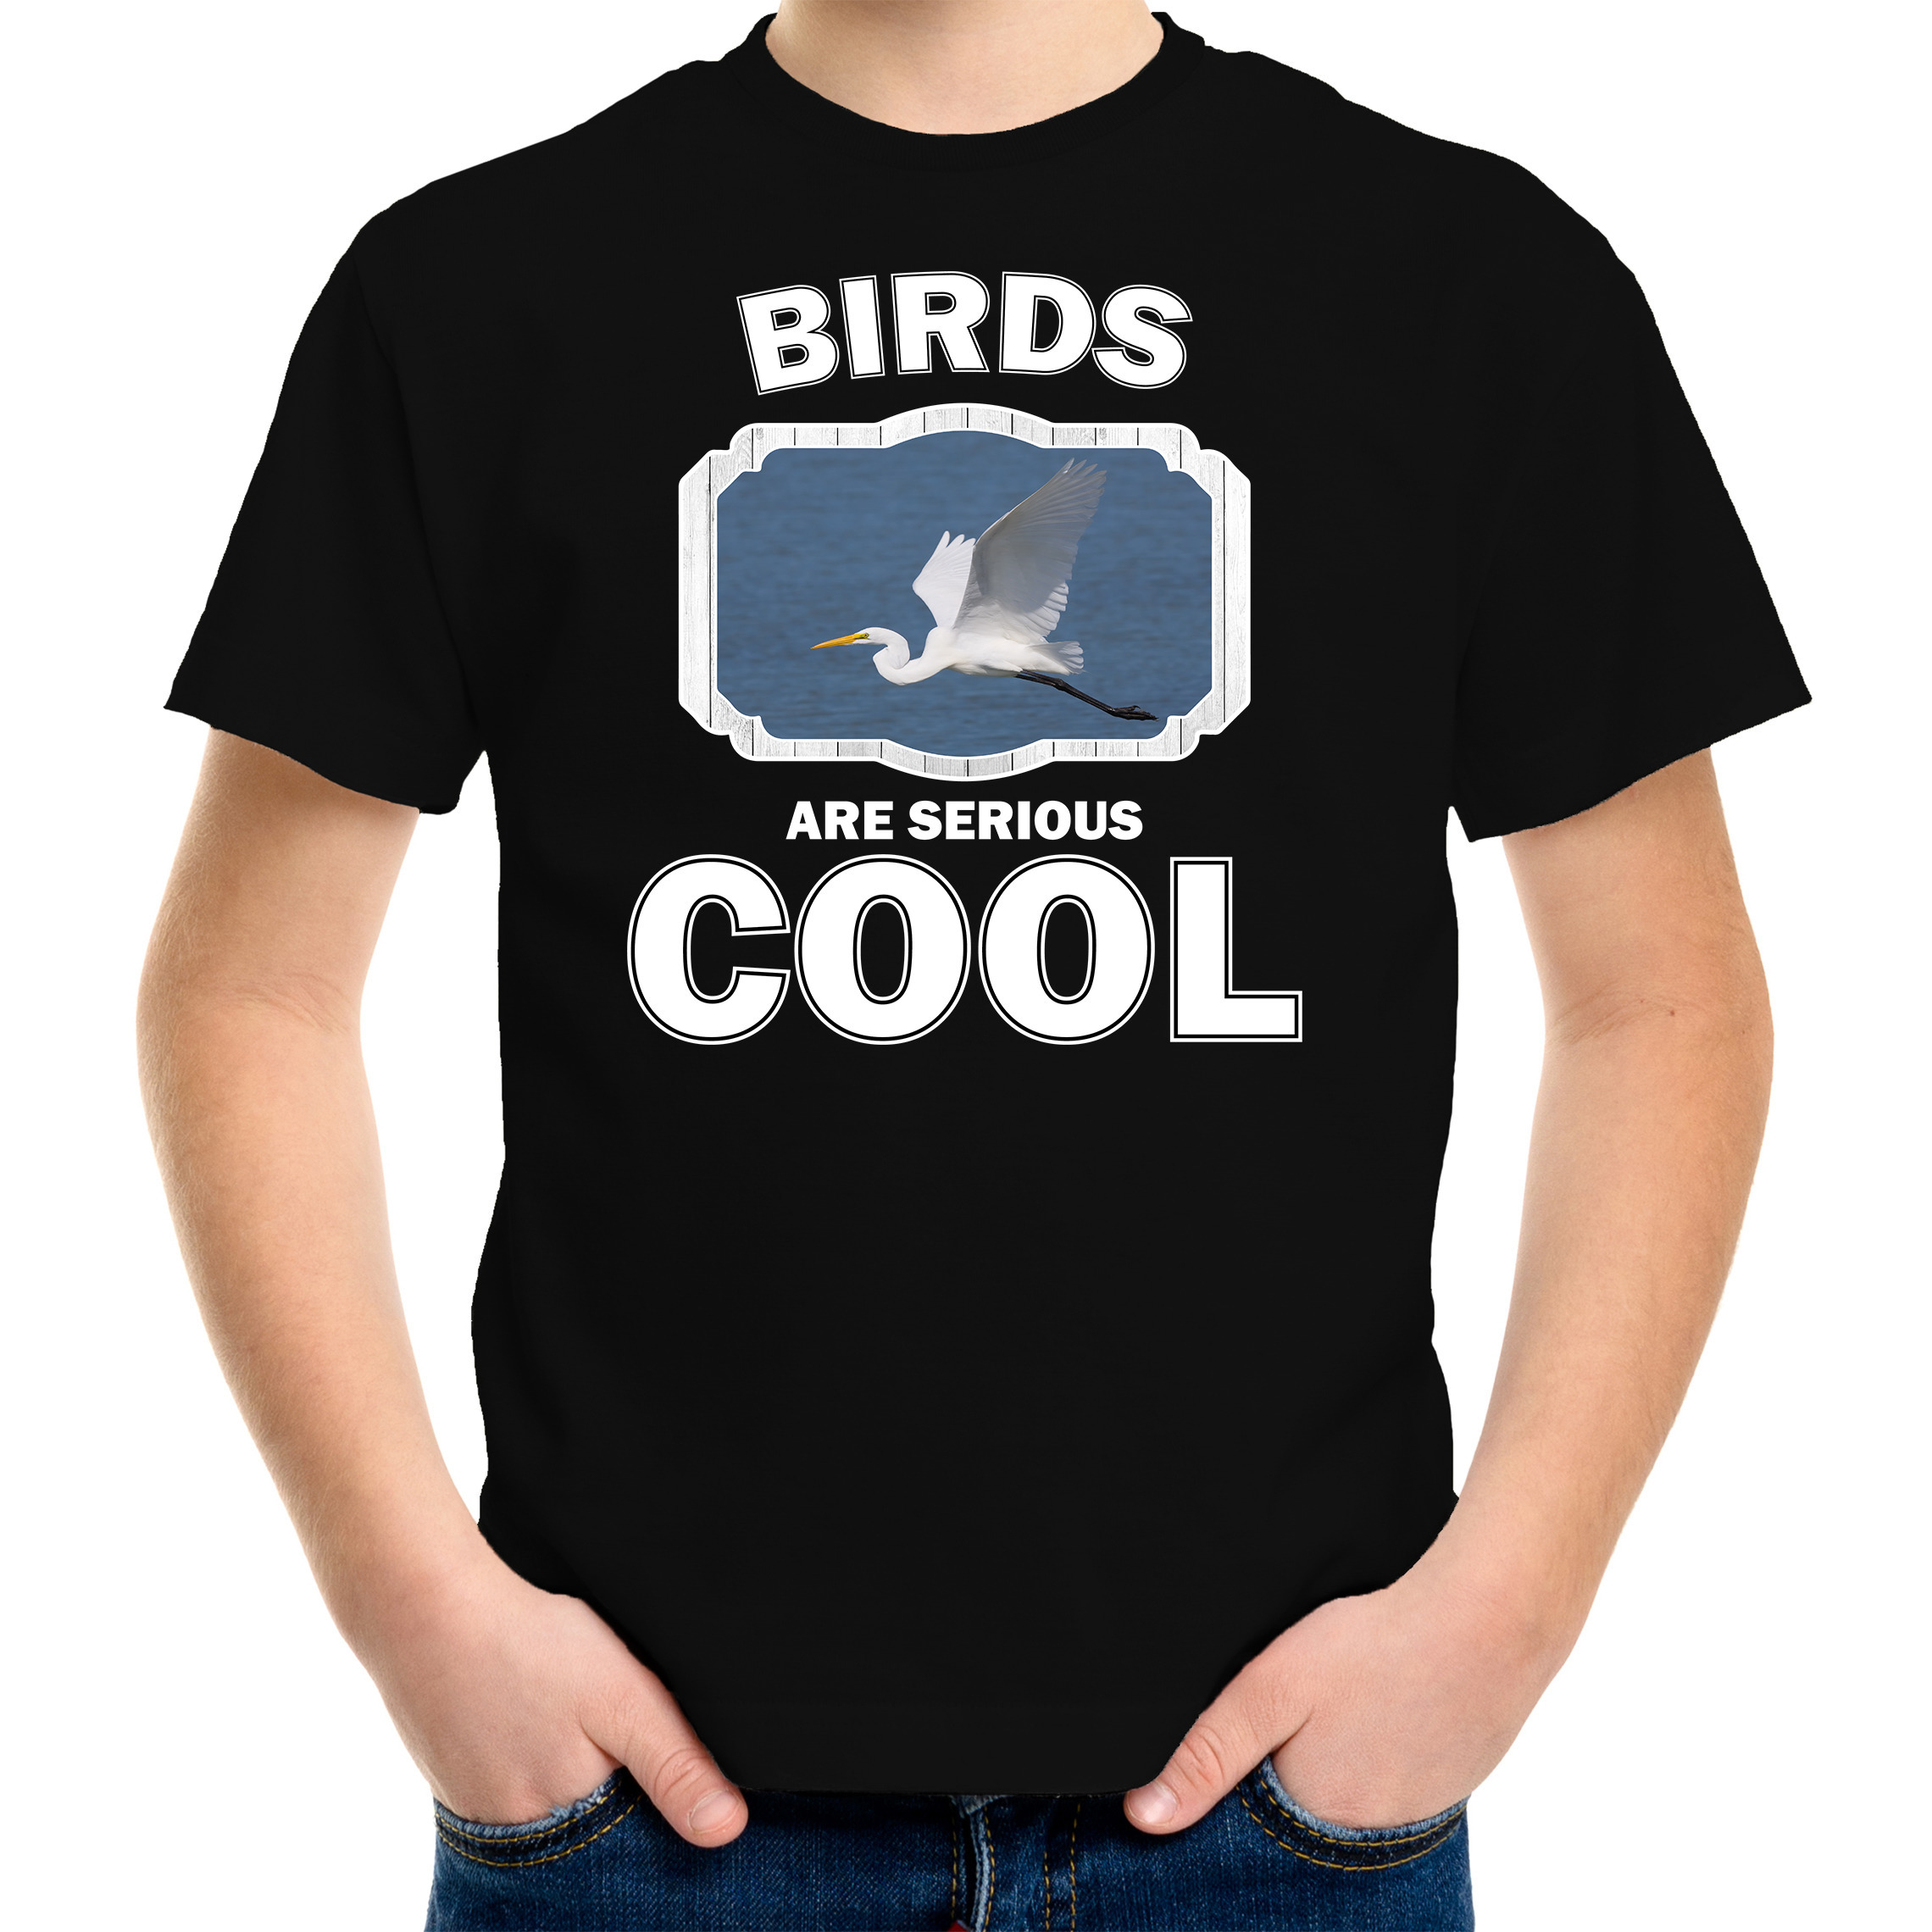 Afbeelding T-shirt birds are serious cool zwart kinderen - vogels/ grote zilverreiger shirt door Animals Giftshop